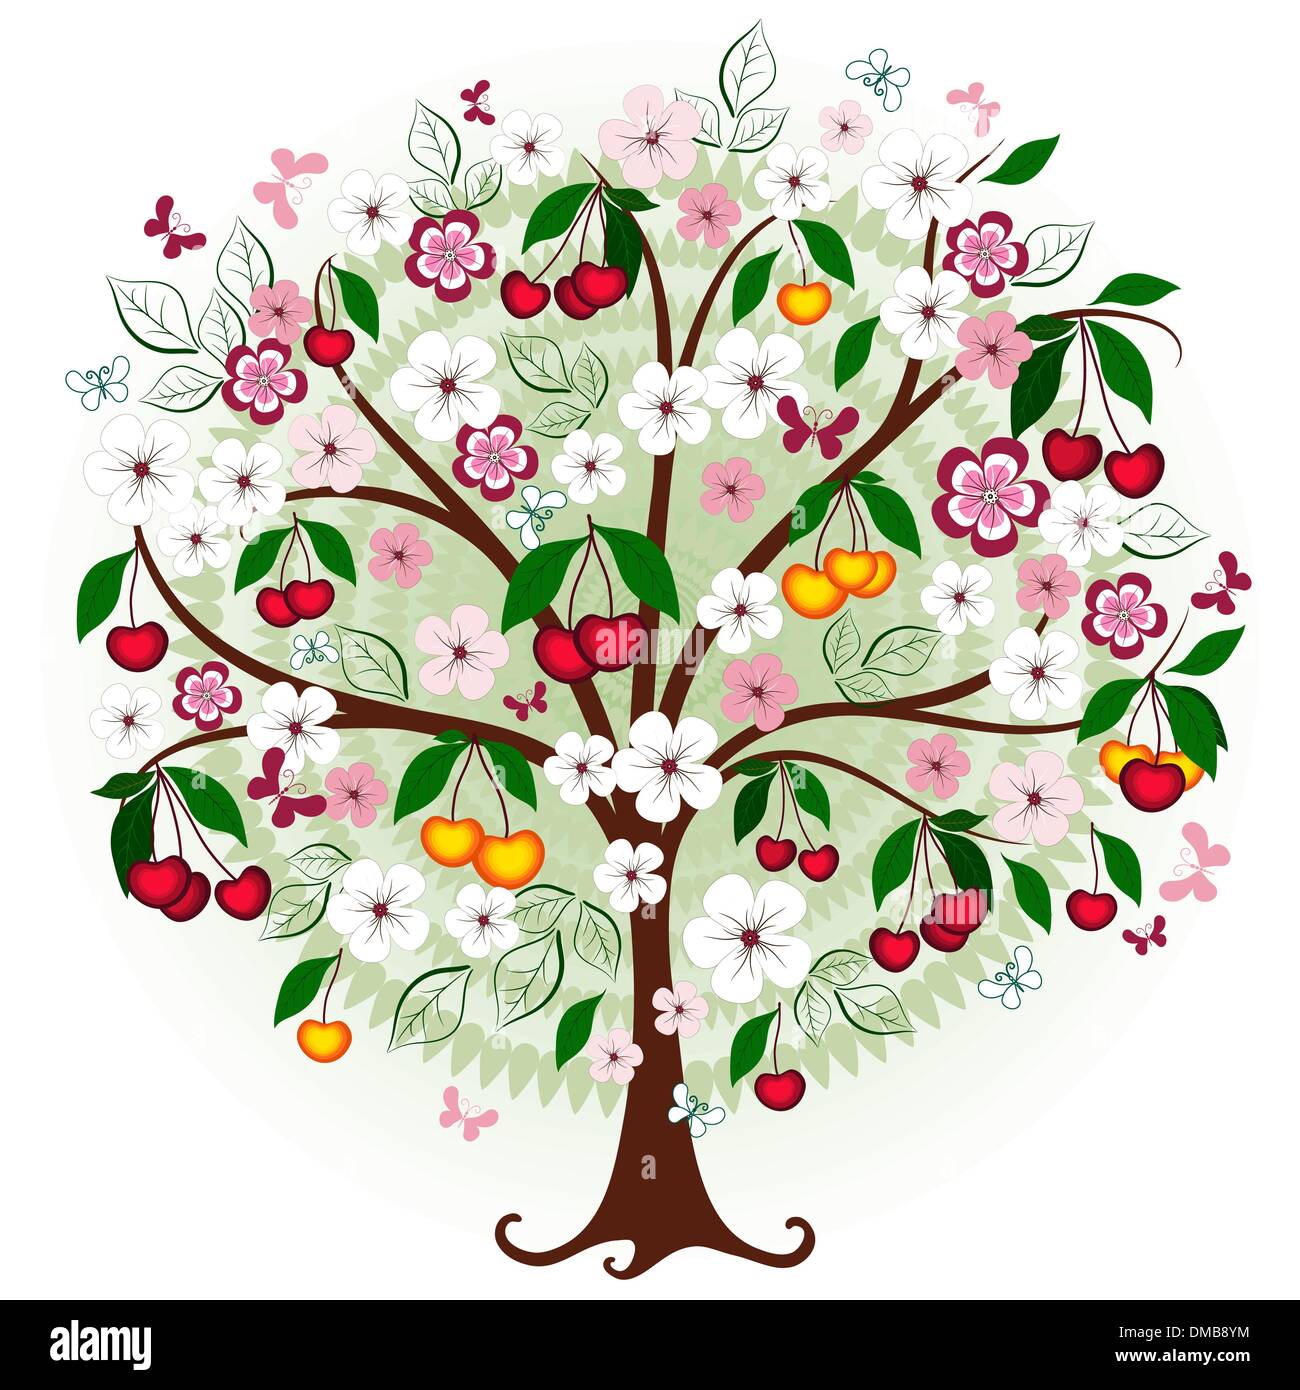 Яблоня дерево символ. Дерево рисунок. Цветущие деревья на прозрачном фоне. Цветущее дерево на прозрачном фоне. Декоративные деревья в иллюстрация.